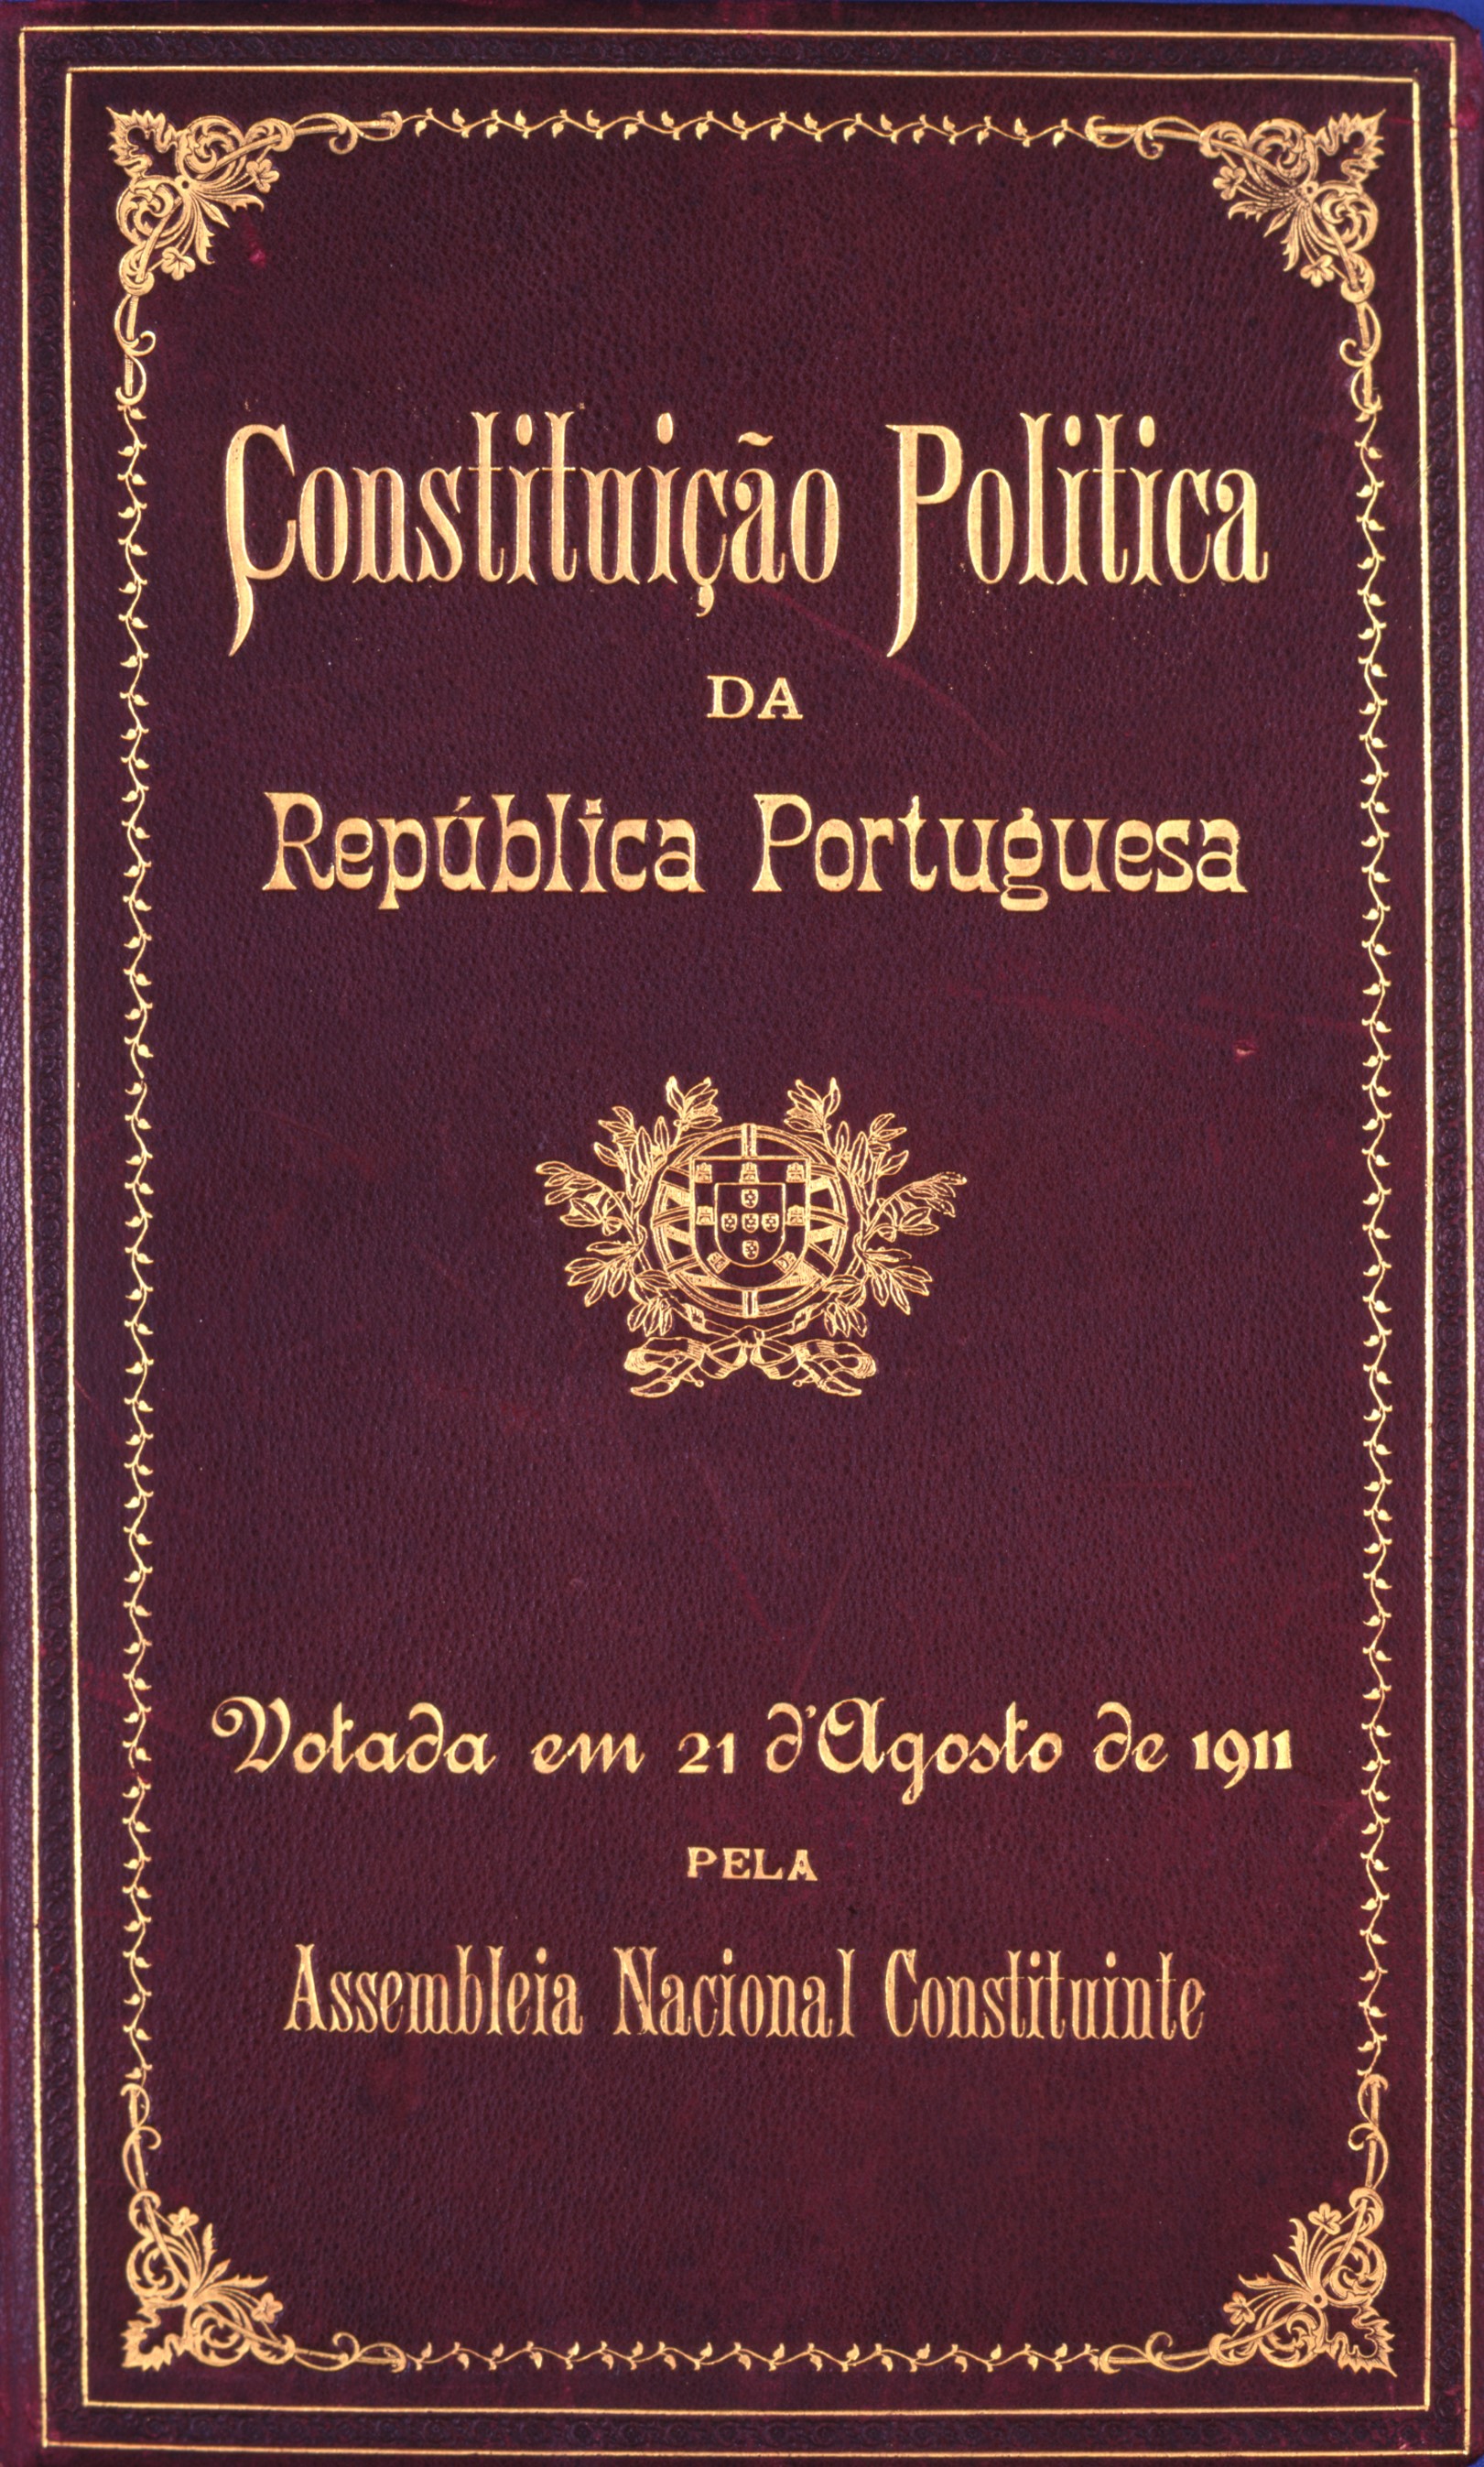 Capa das Constituição de 1911